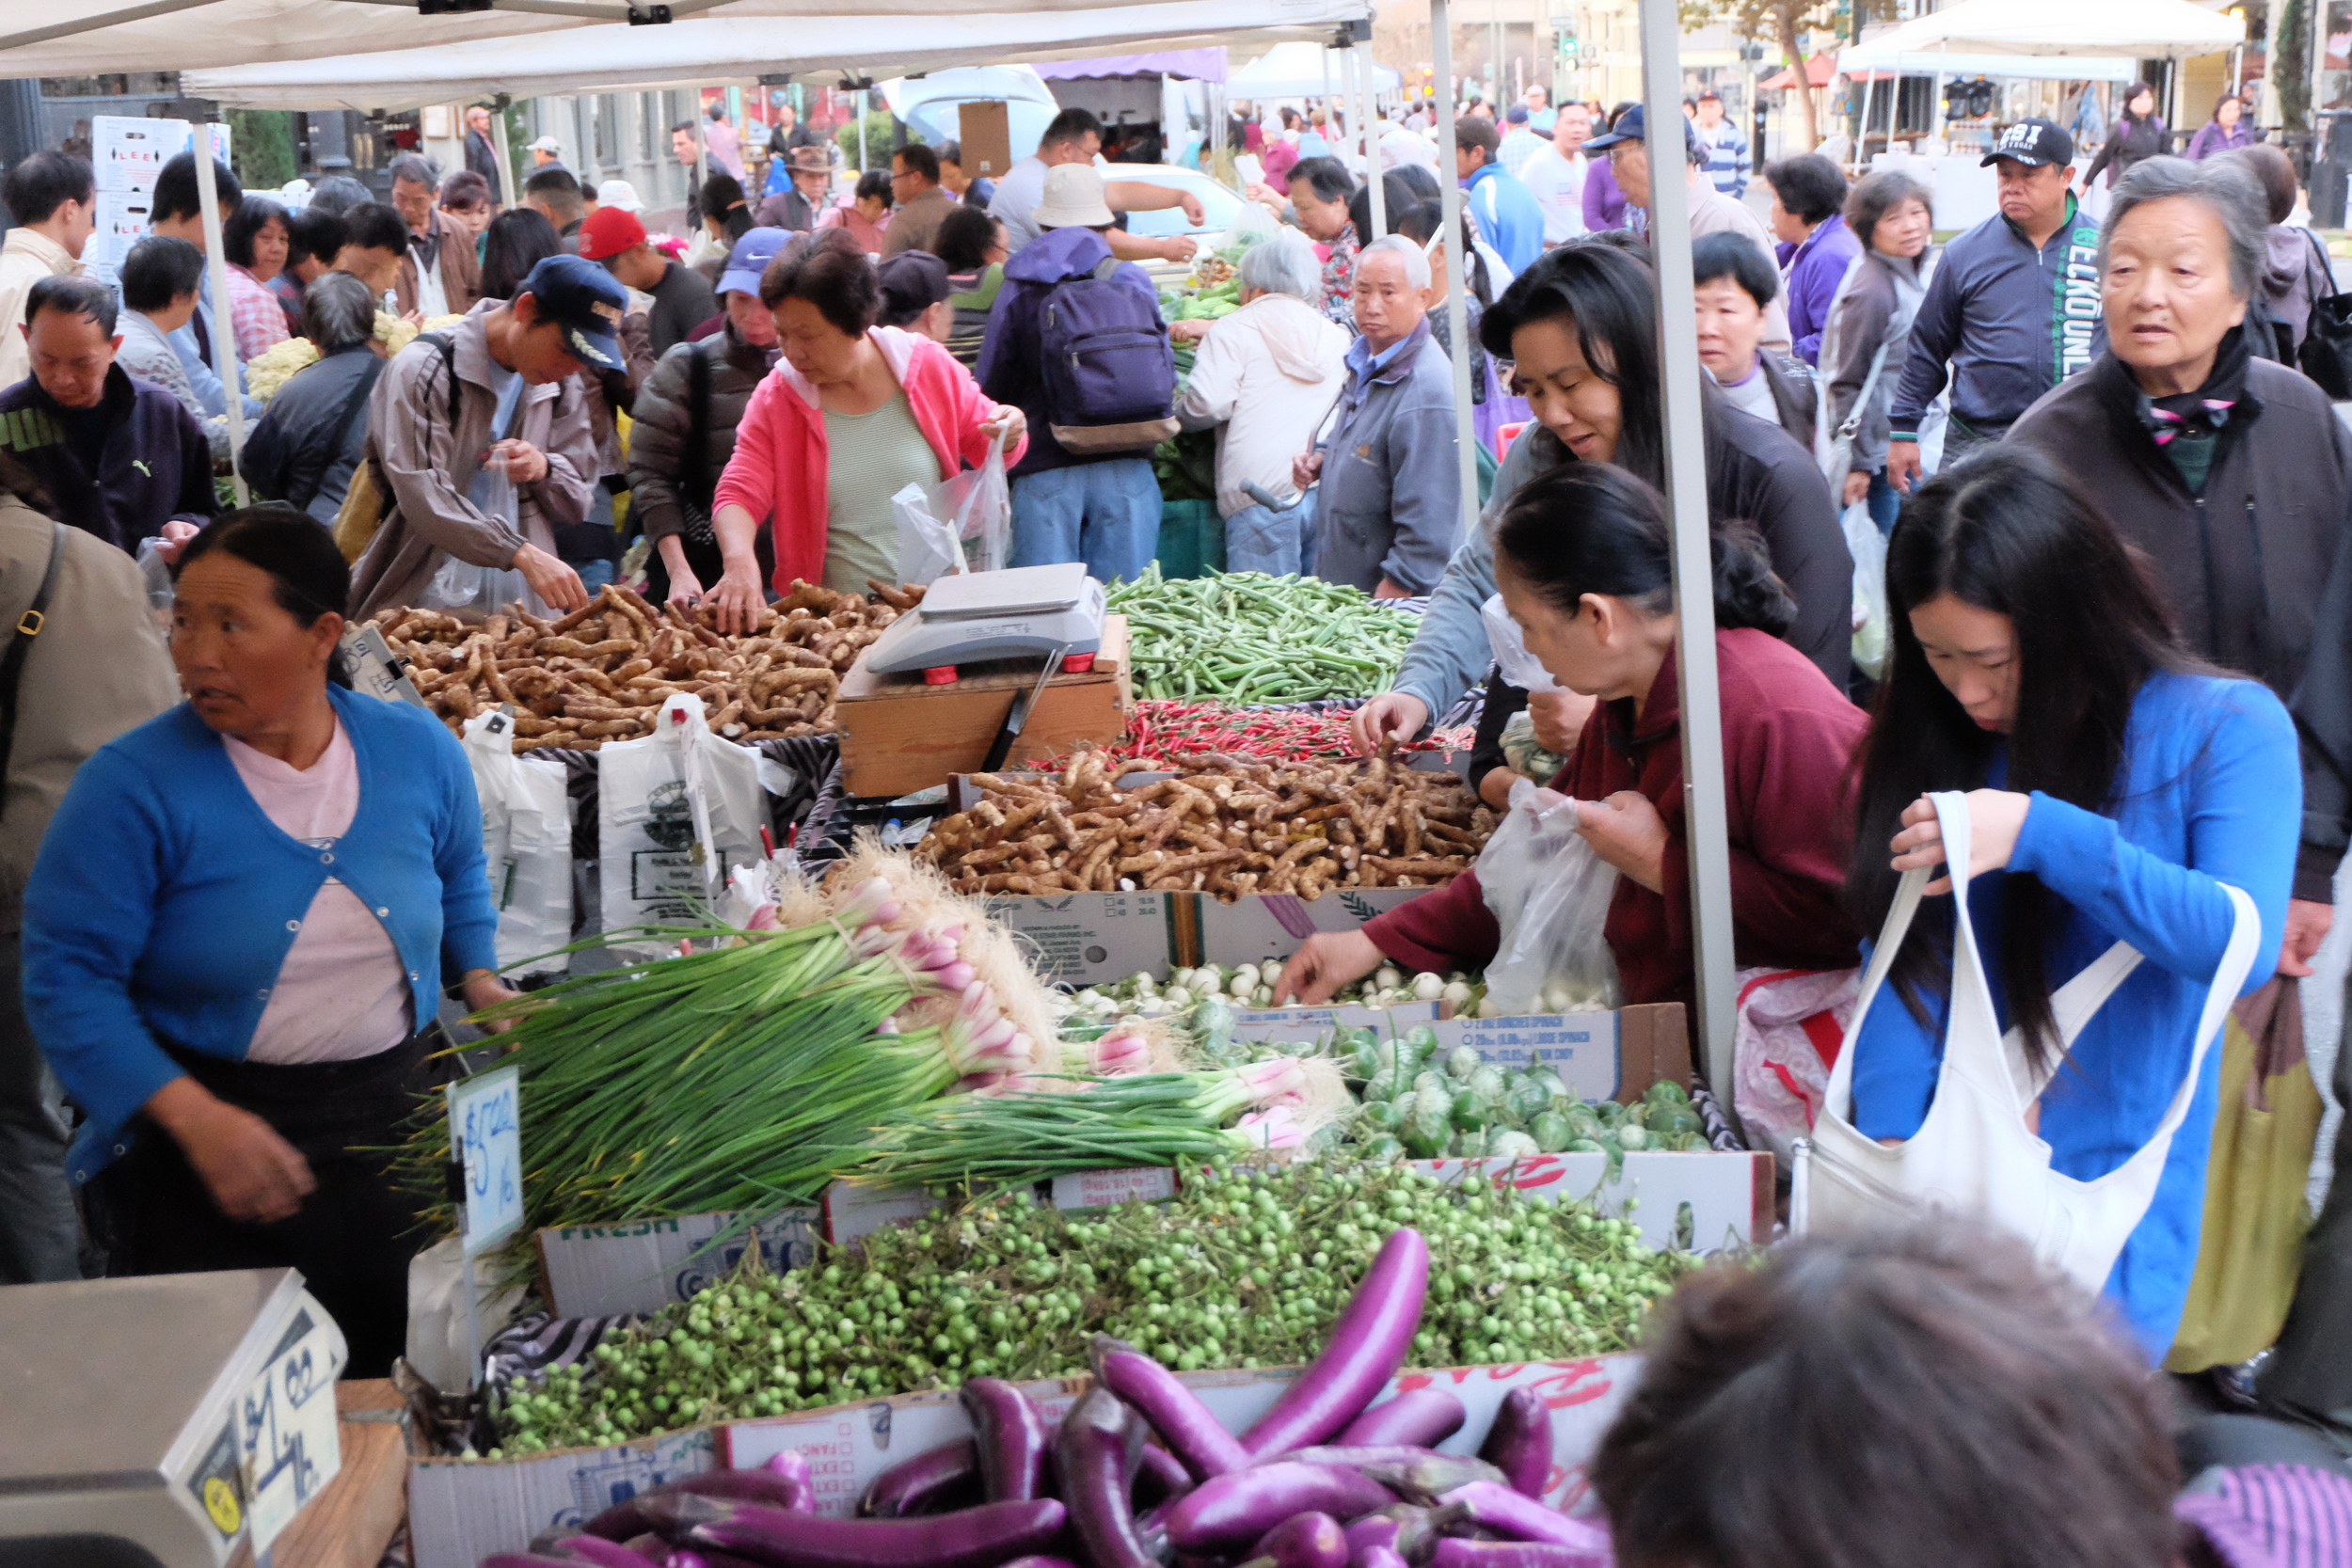 The Best Farmers Markets in Oakland, CA